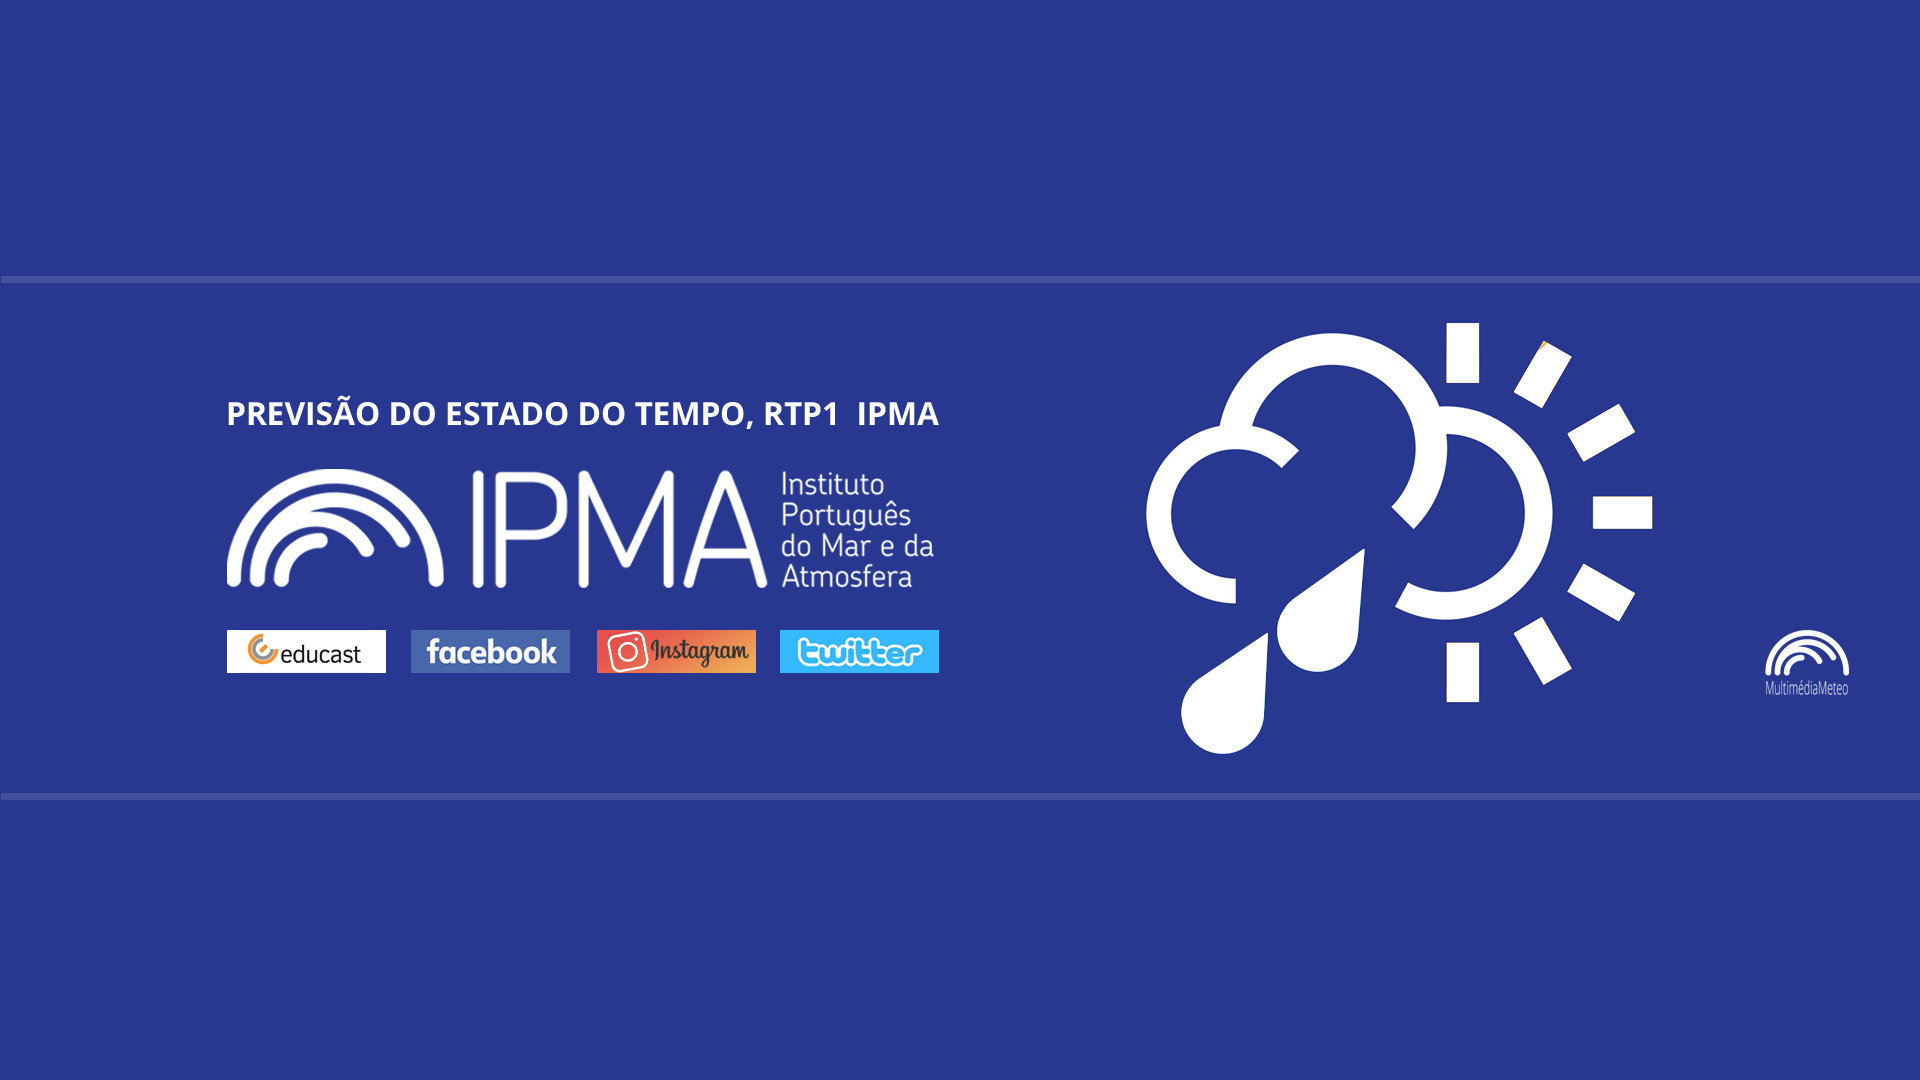  Previsão do estado do tempo, RTP1, 20-01-2022, IPMA.